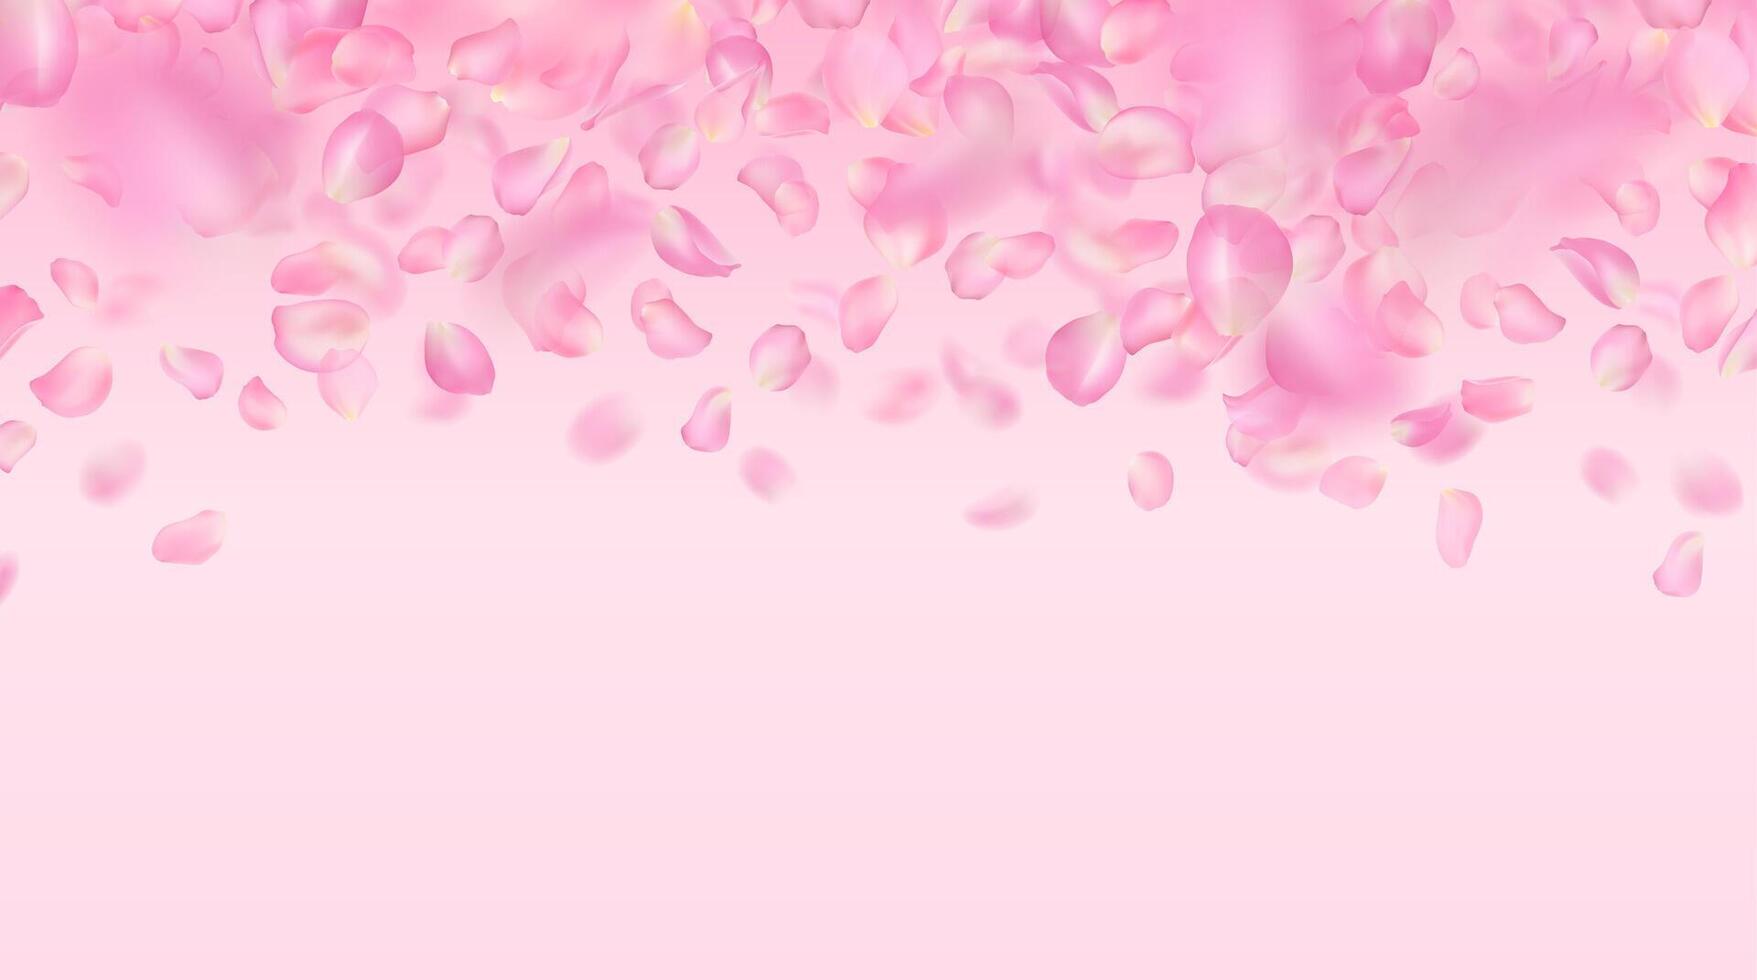 Vektor Hintergrund von realistisch fallen Rosa Rose Blütenblätter. Vorlage von fliegend voluminös verschwommen Sakura Blütenblätter mit verwischen Wirkung. Frühling Blumen- Illustration zum Hintergrund, Banner, romantisch Gruß Karte.